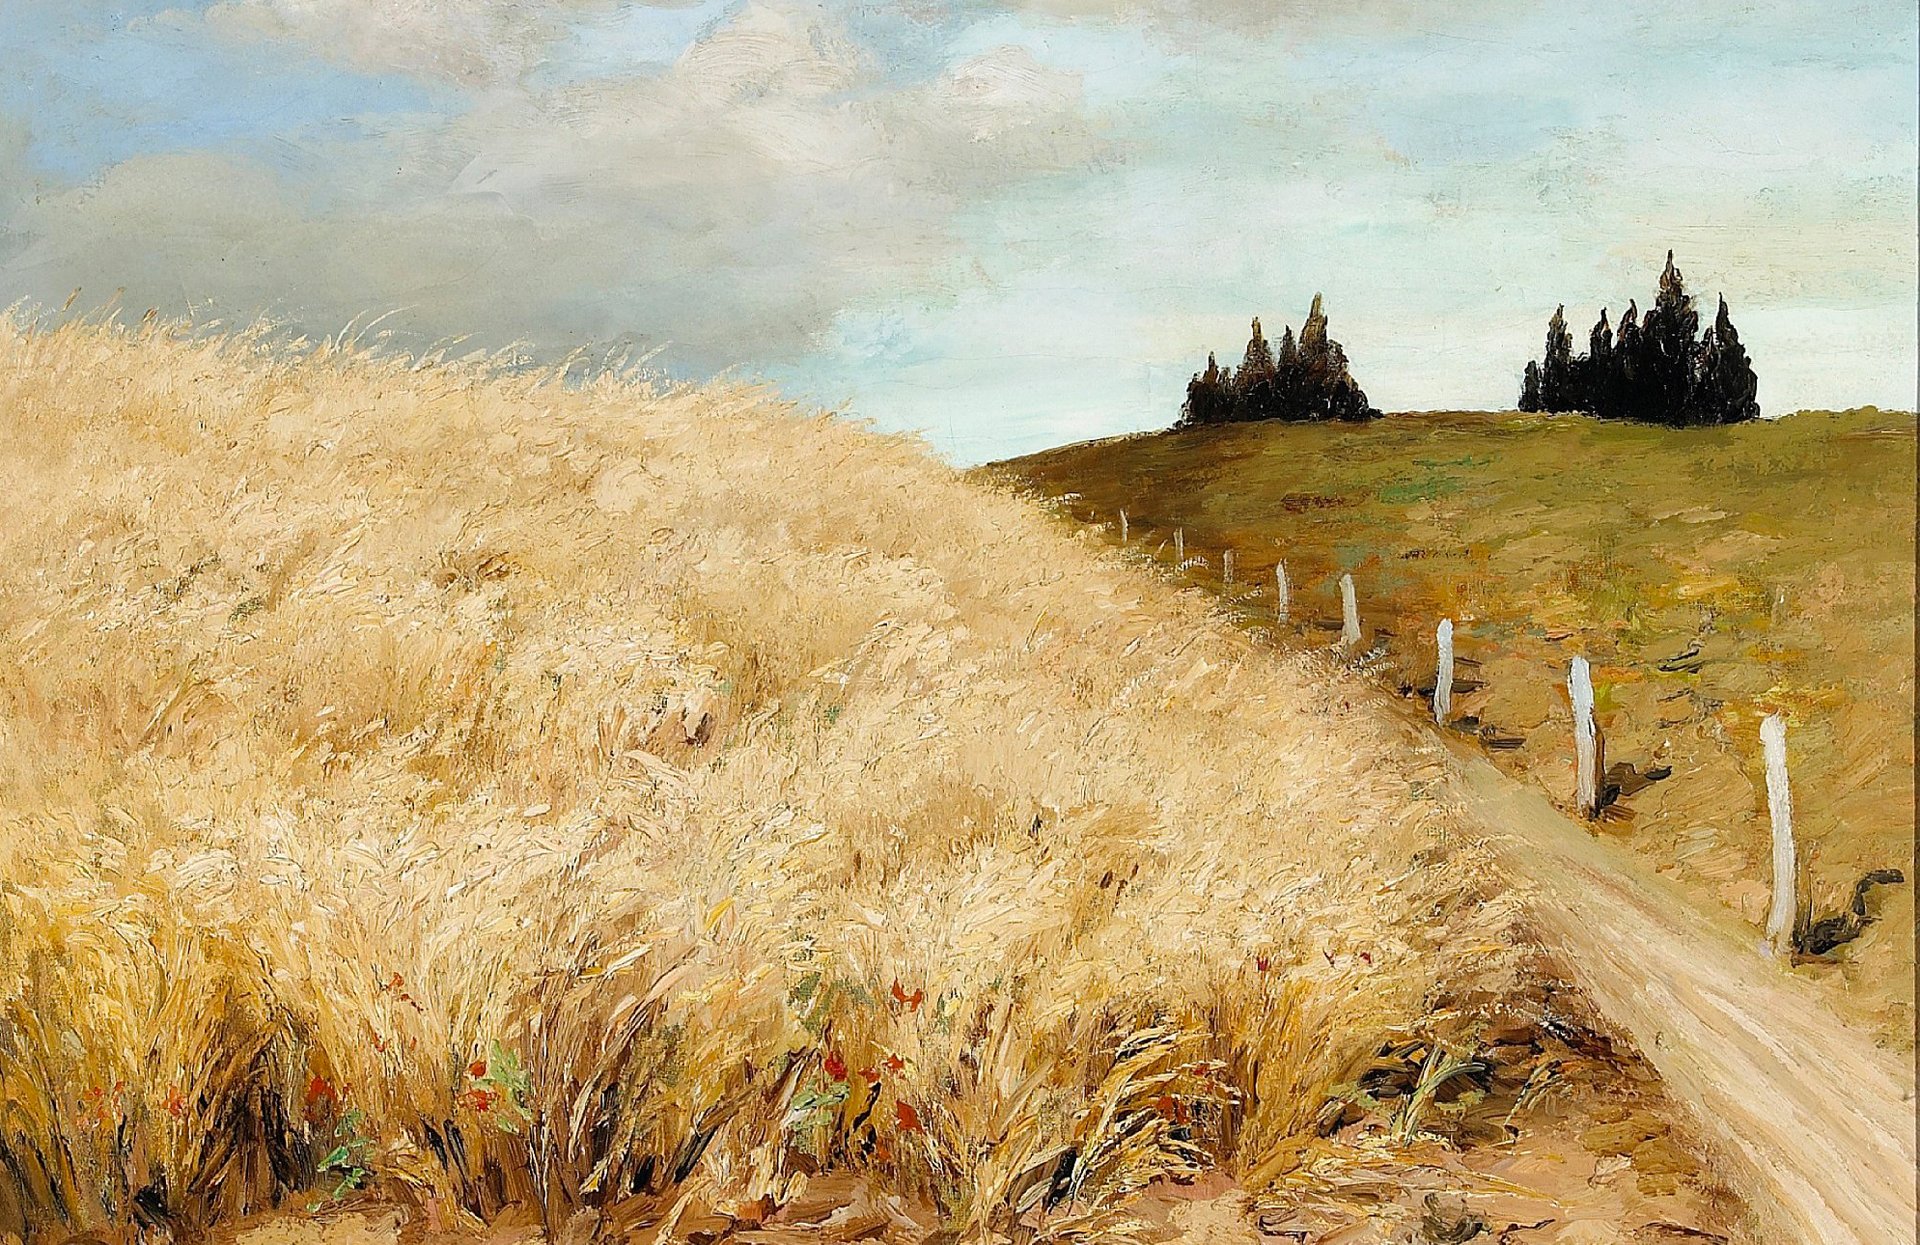 Картины с изображением пшеницы